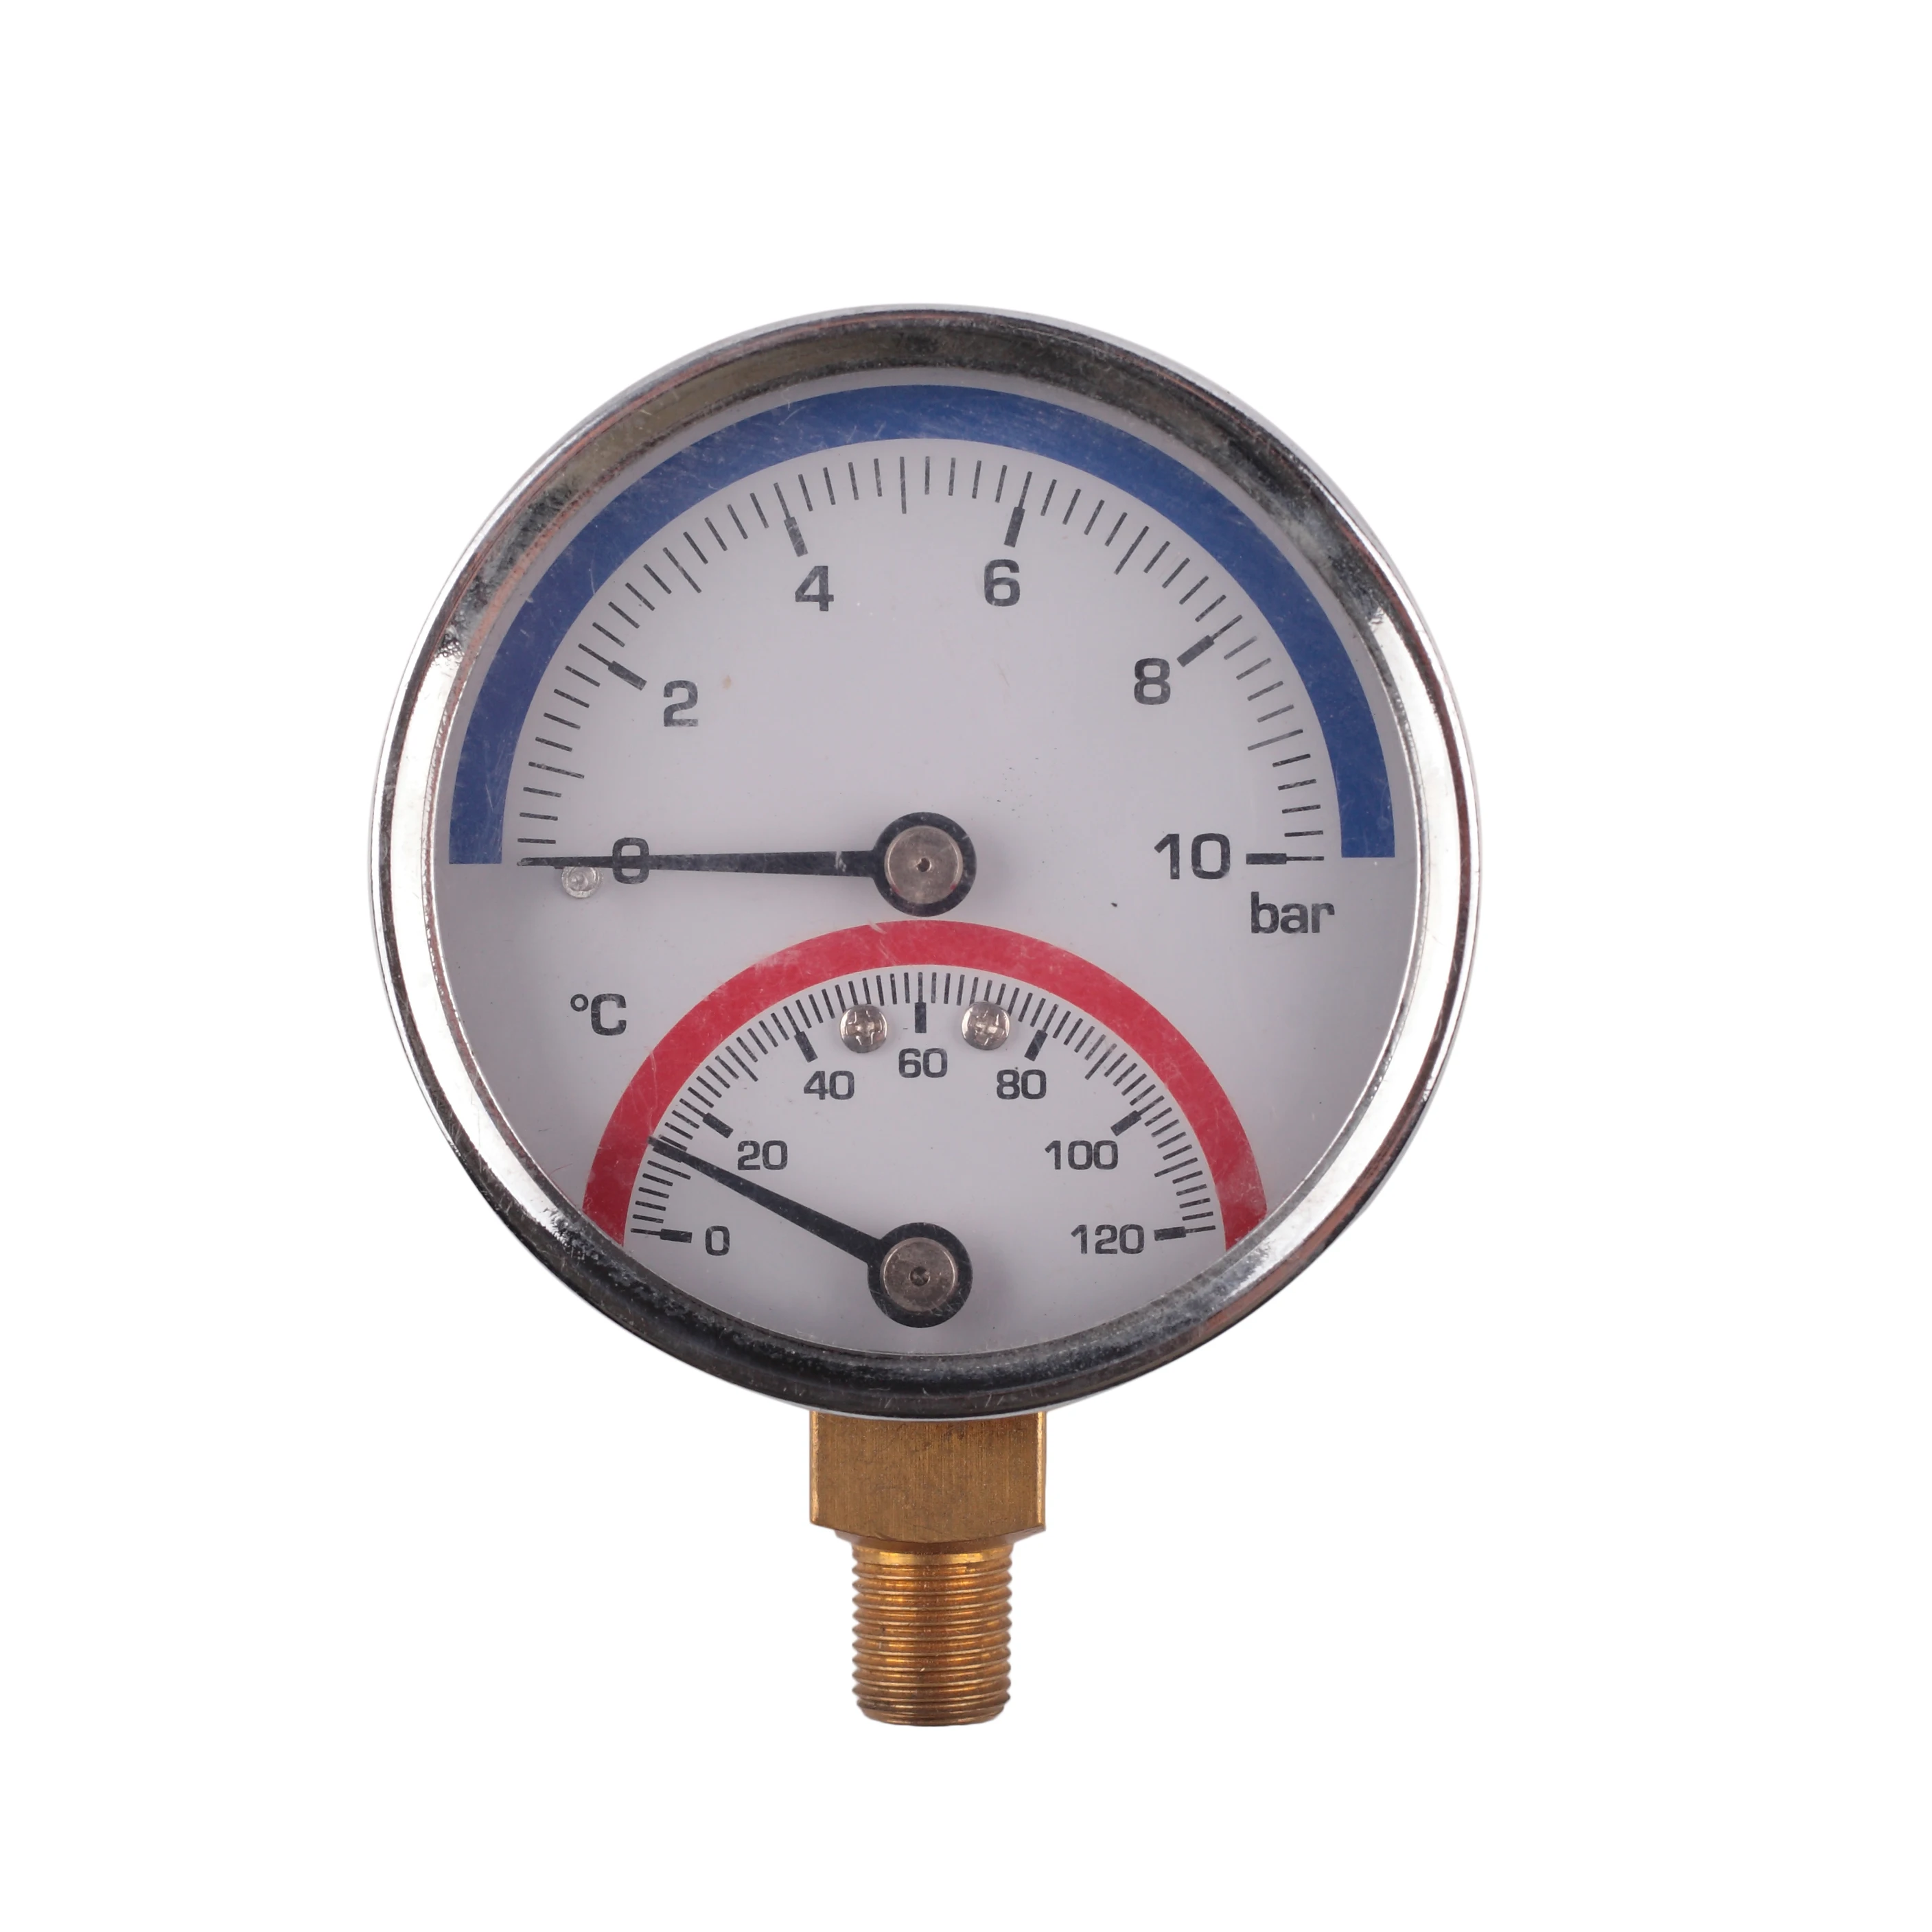 High pressure steam temperature and pressure фото 104